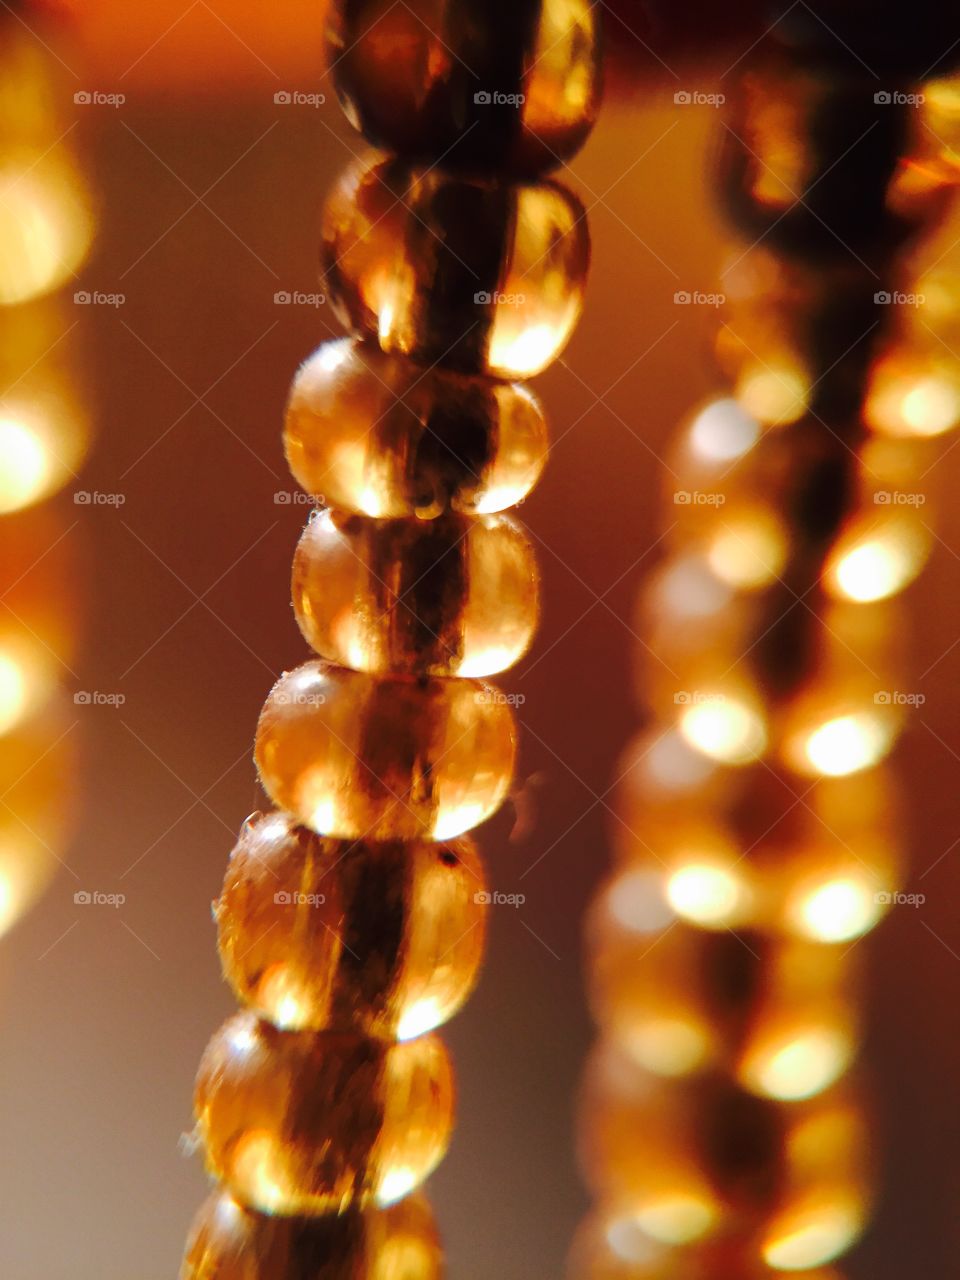 Beads Macro
